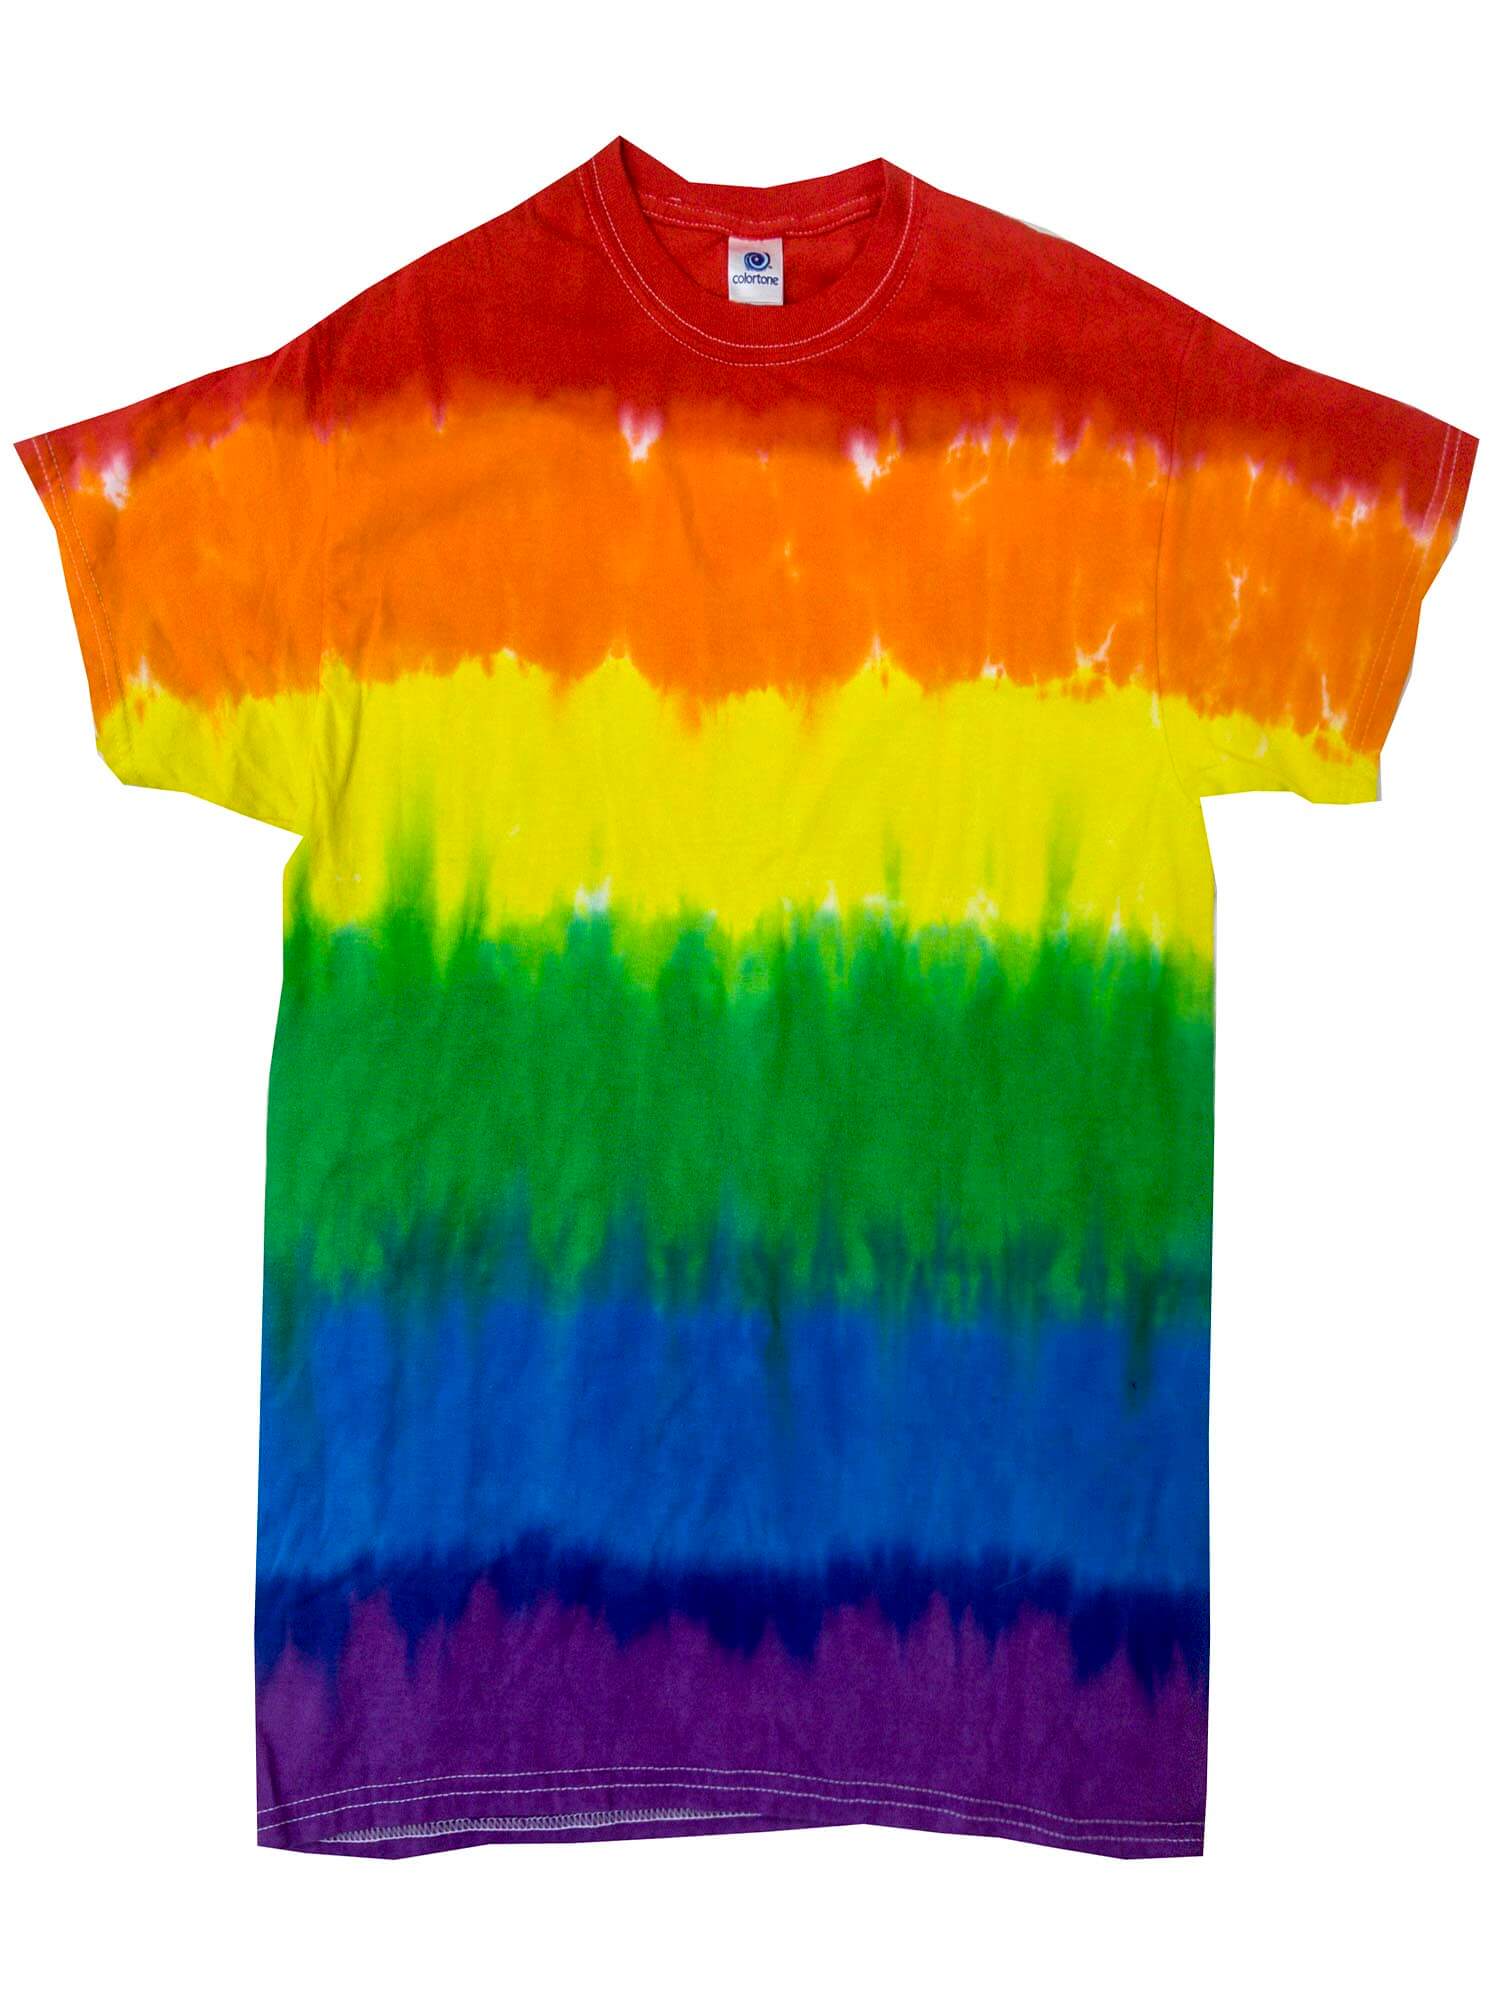 Pride Tie-Dye T-Shirts